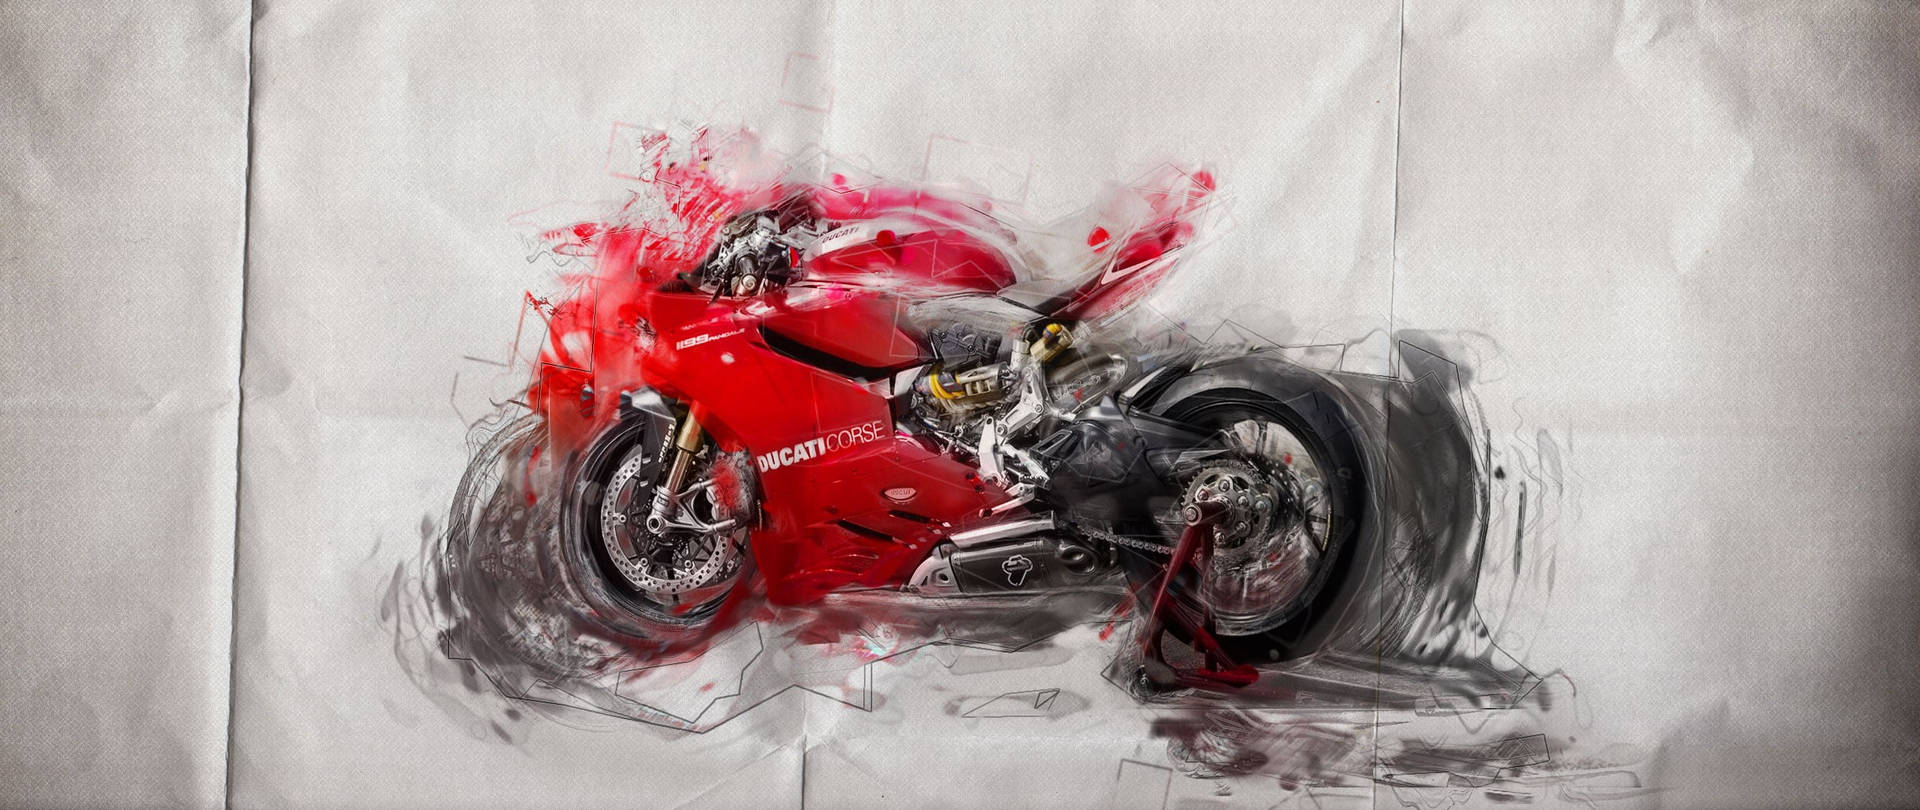 Ducaticorse Röd Motorcykel Illustration Wallpaper